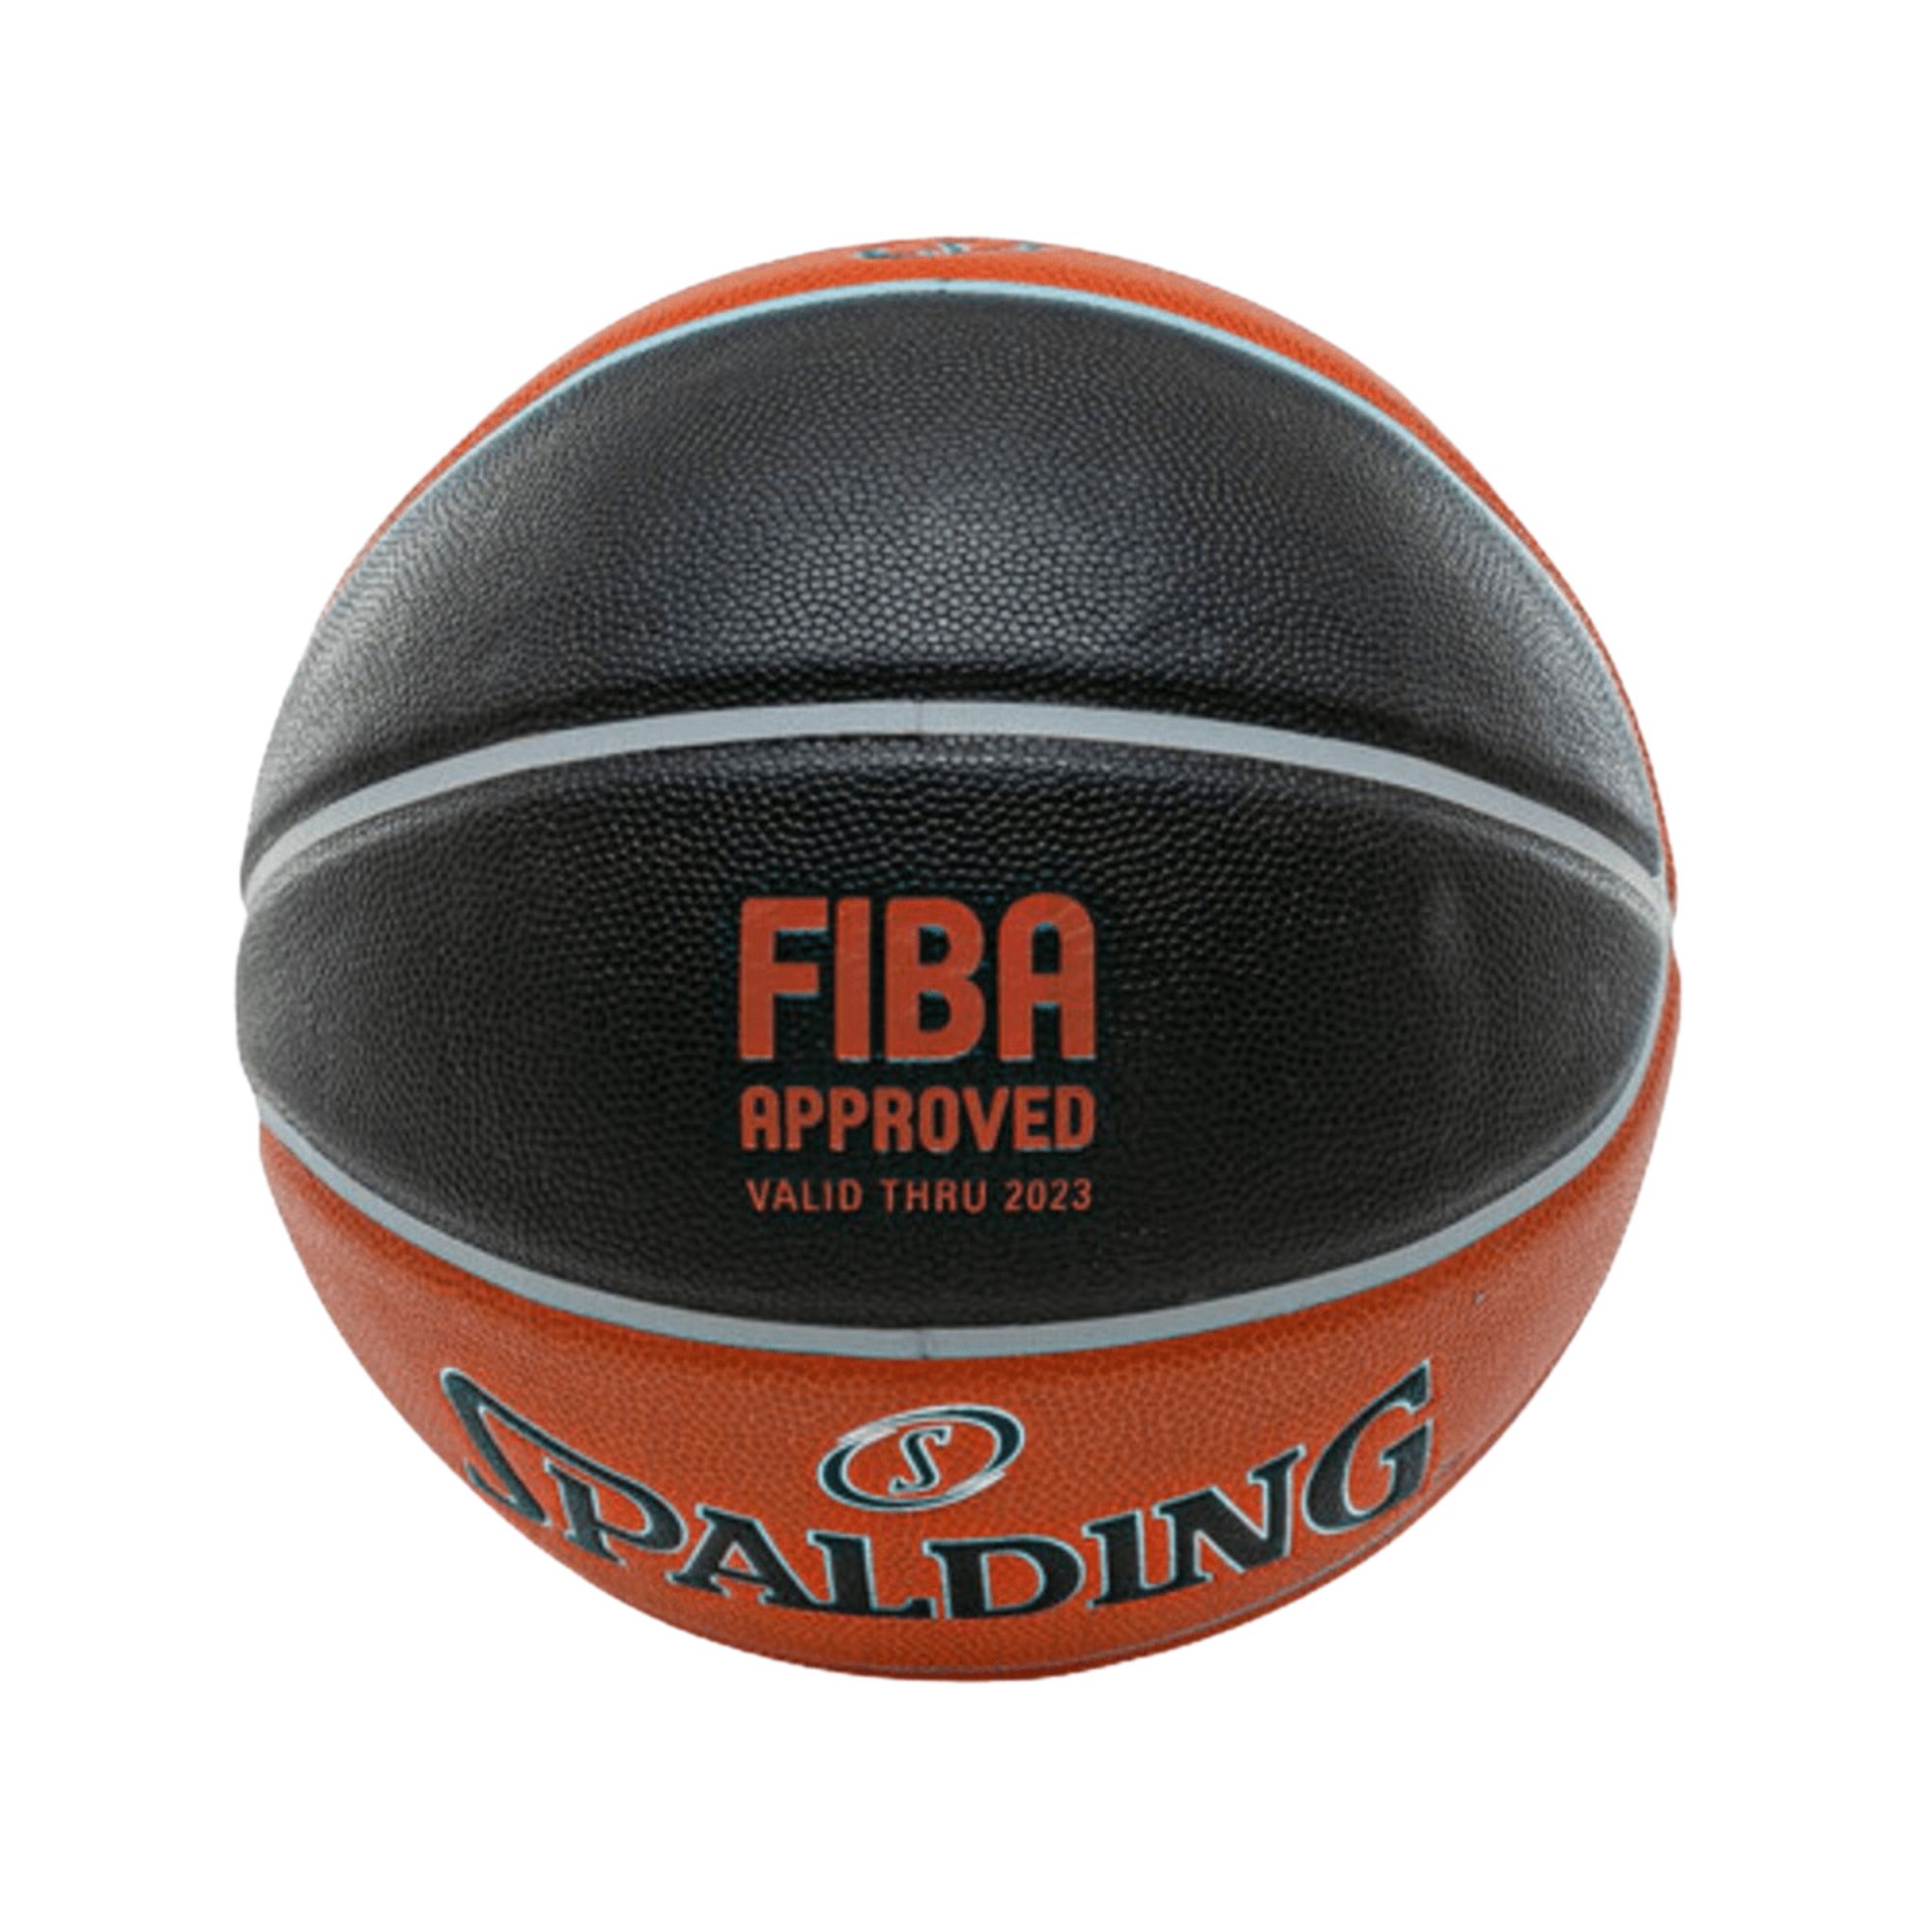 Mini bola Spalding TF colecionável, microfibra, dourada, tamanho 1